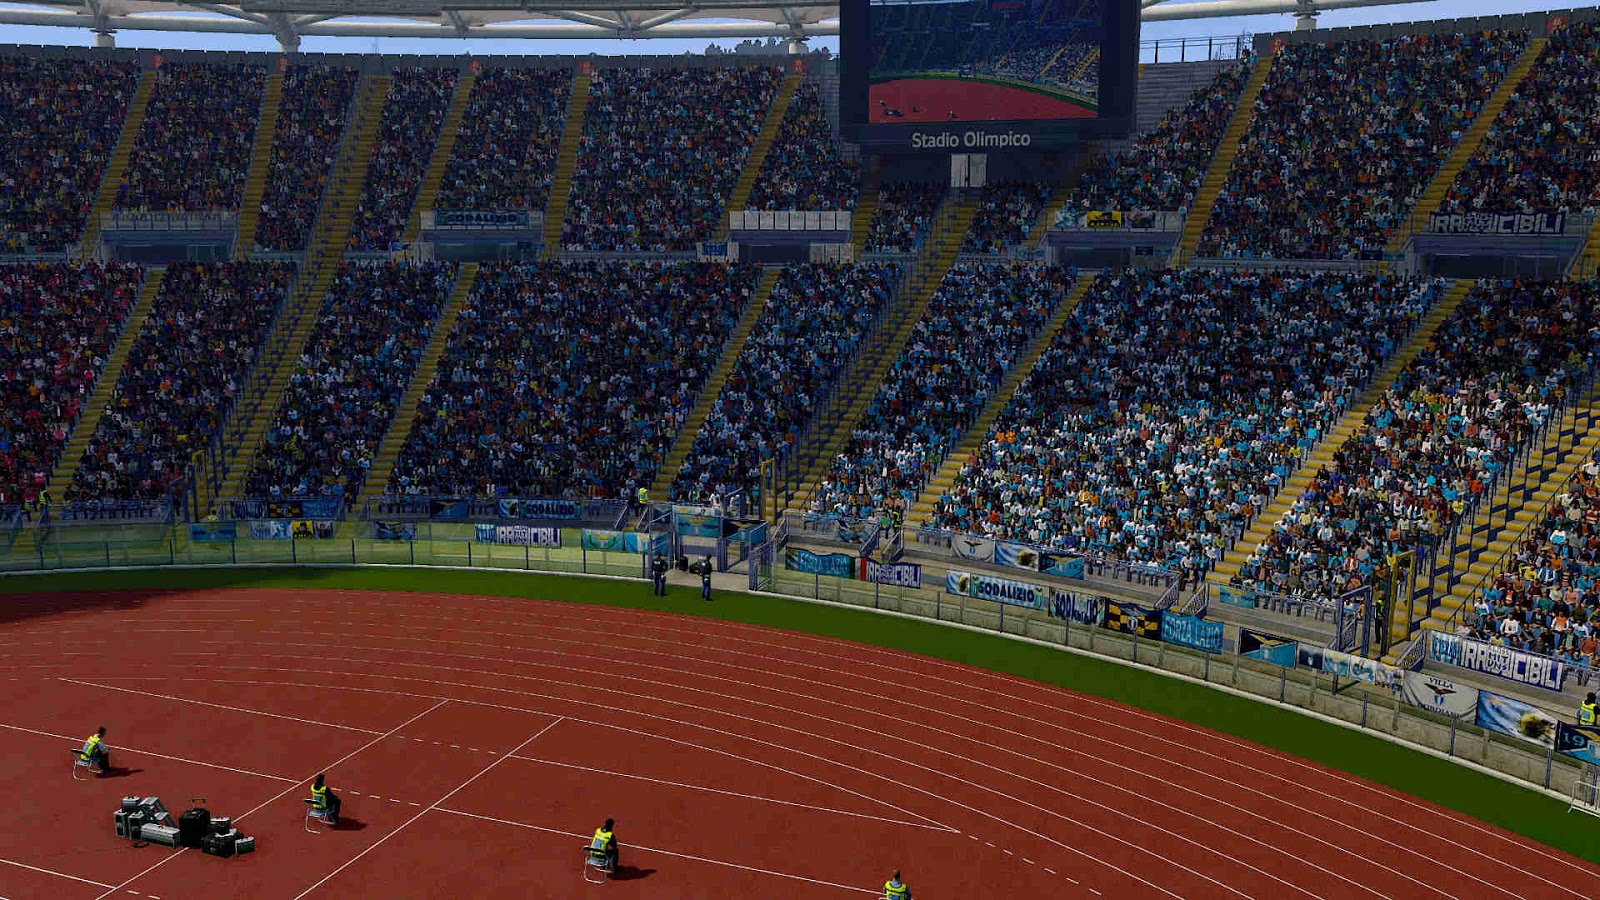 PES 2019 Stadium Olimpico ( SS Lazio ) by Omarbonvi ...